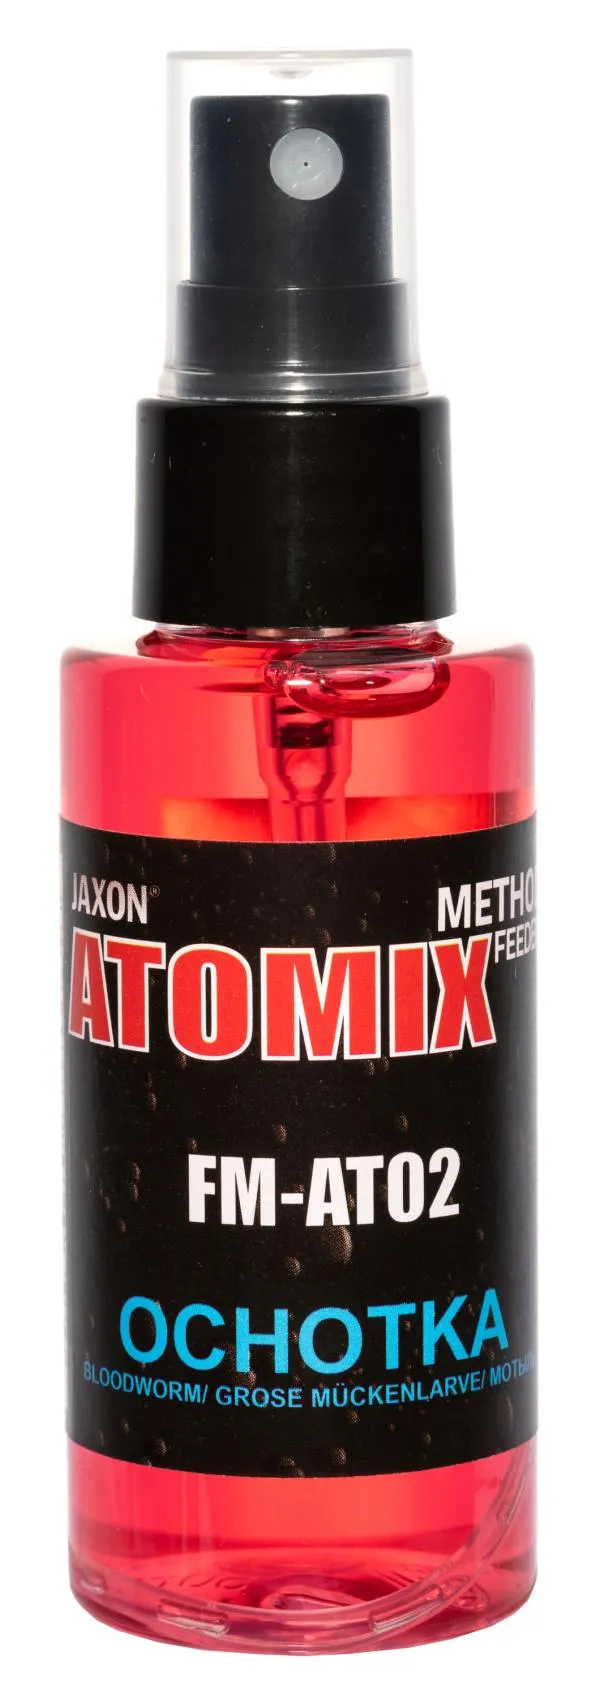 JAXON ATOMIX - BLOODWORM 50g aroma